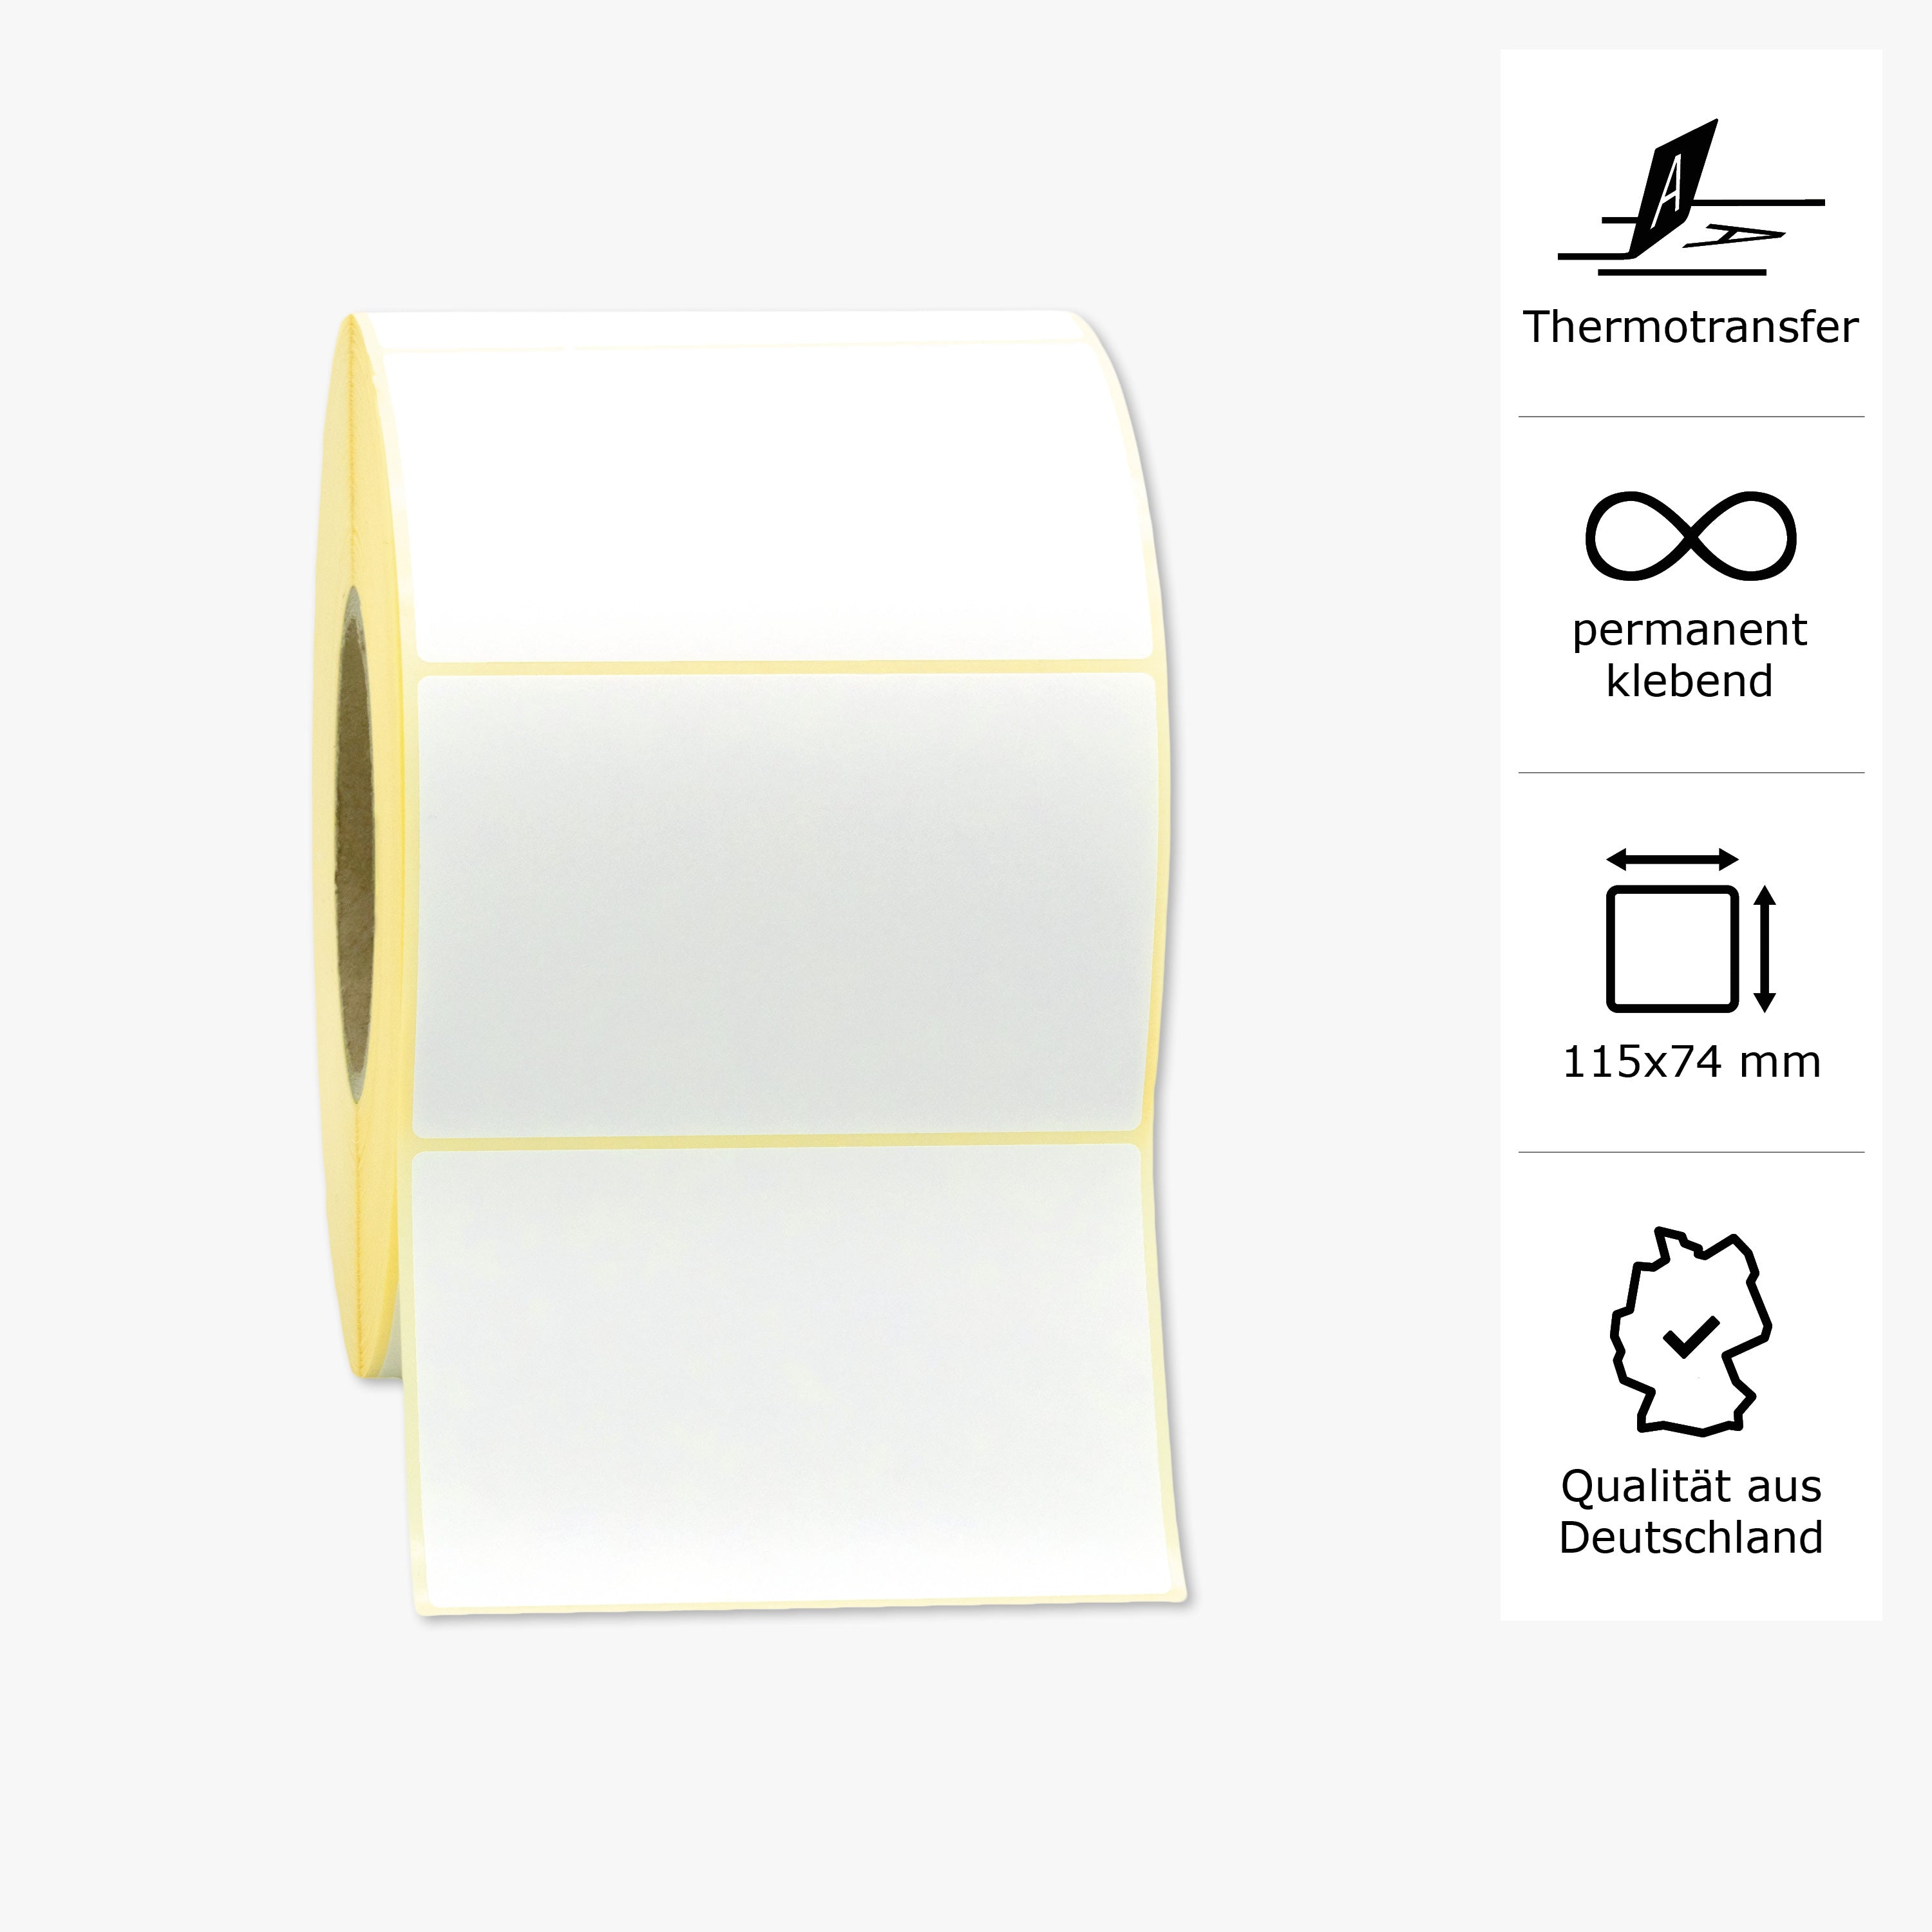 Thermotransfer-Etiketten, Papier, 115 x 74 mm, 3 Zoll Kern, permanent haftend, weiß, 1.968 Etiketten pro Rolle